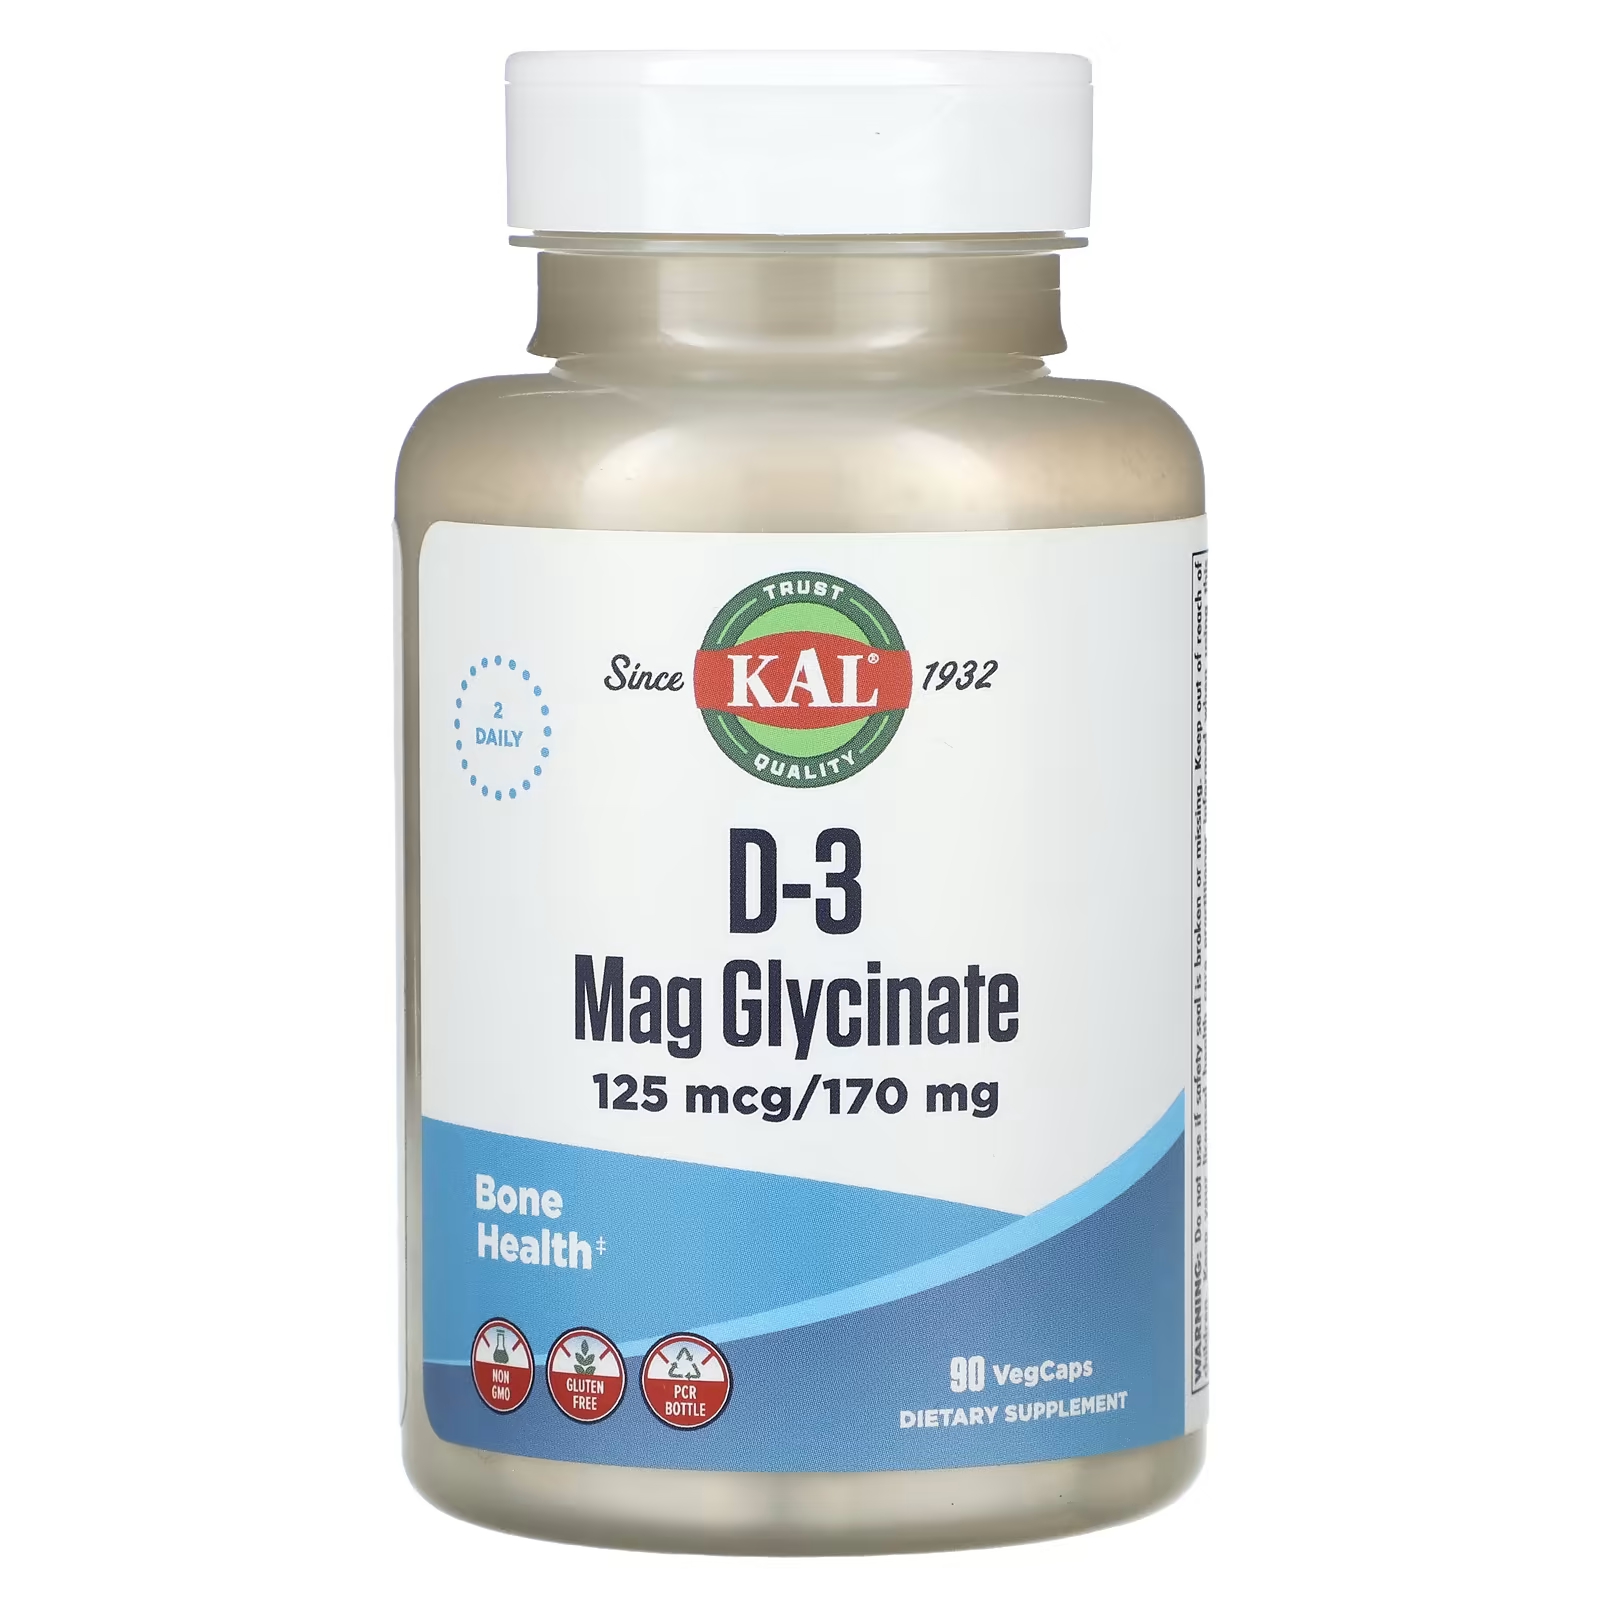 Пищевая добавка Kal D-3 Mag Glycinate, 90 растительных капсул kal глицинат магния d 3 125 мкг 170 мг 90 вегетарианских капсул